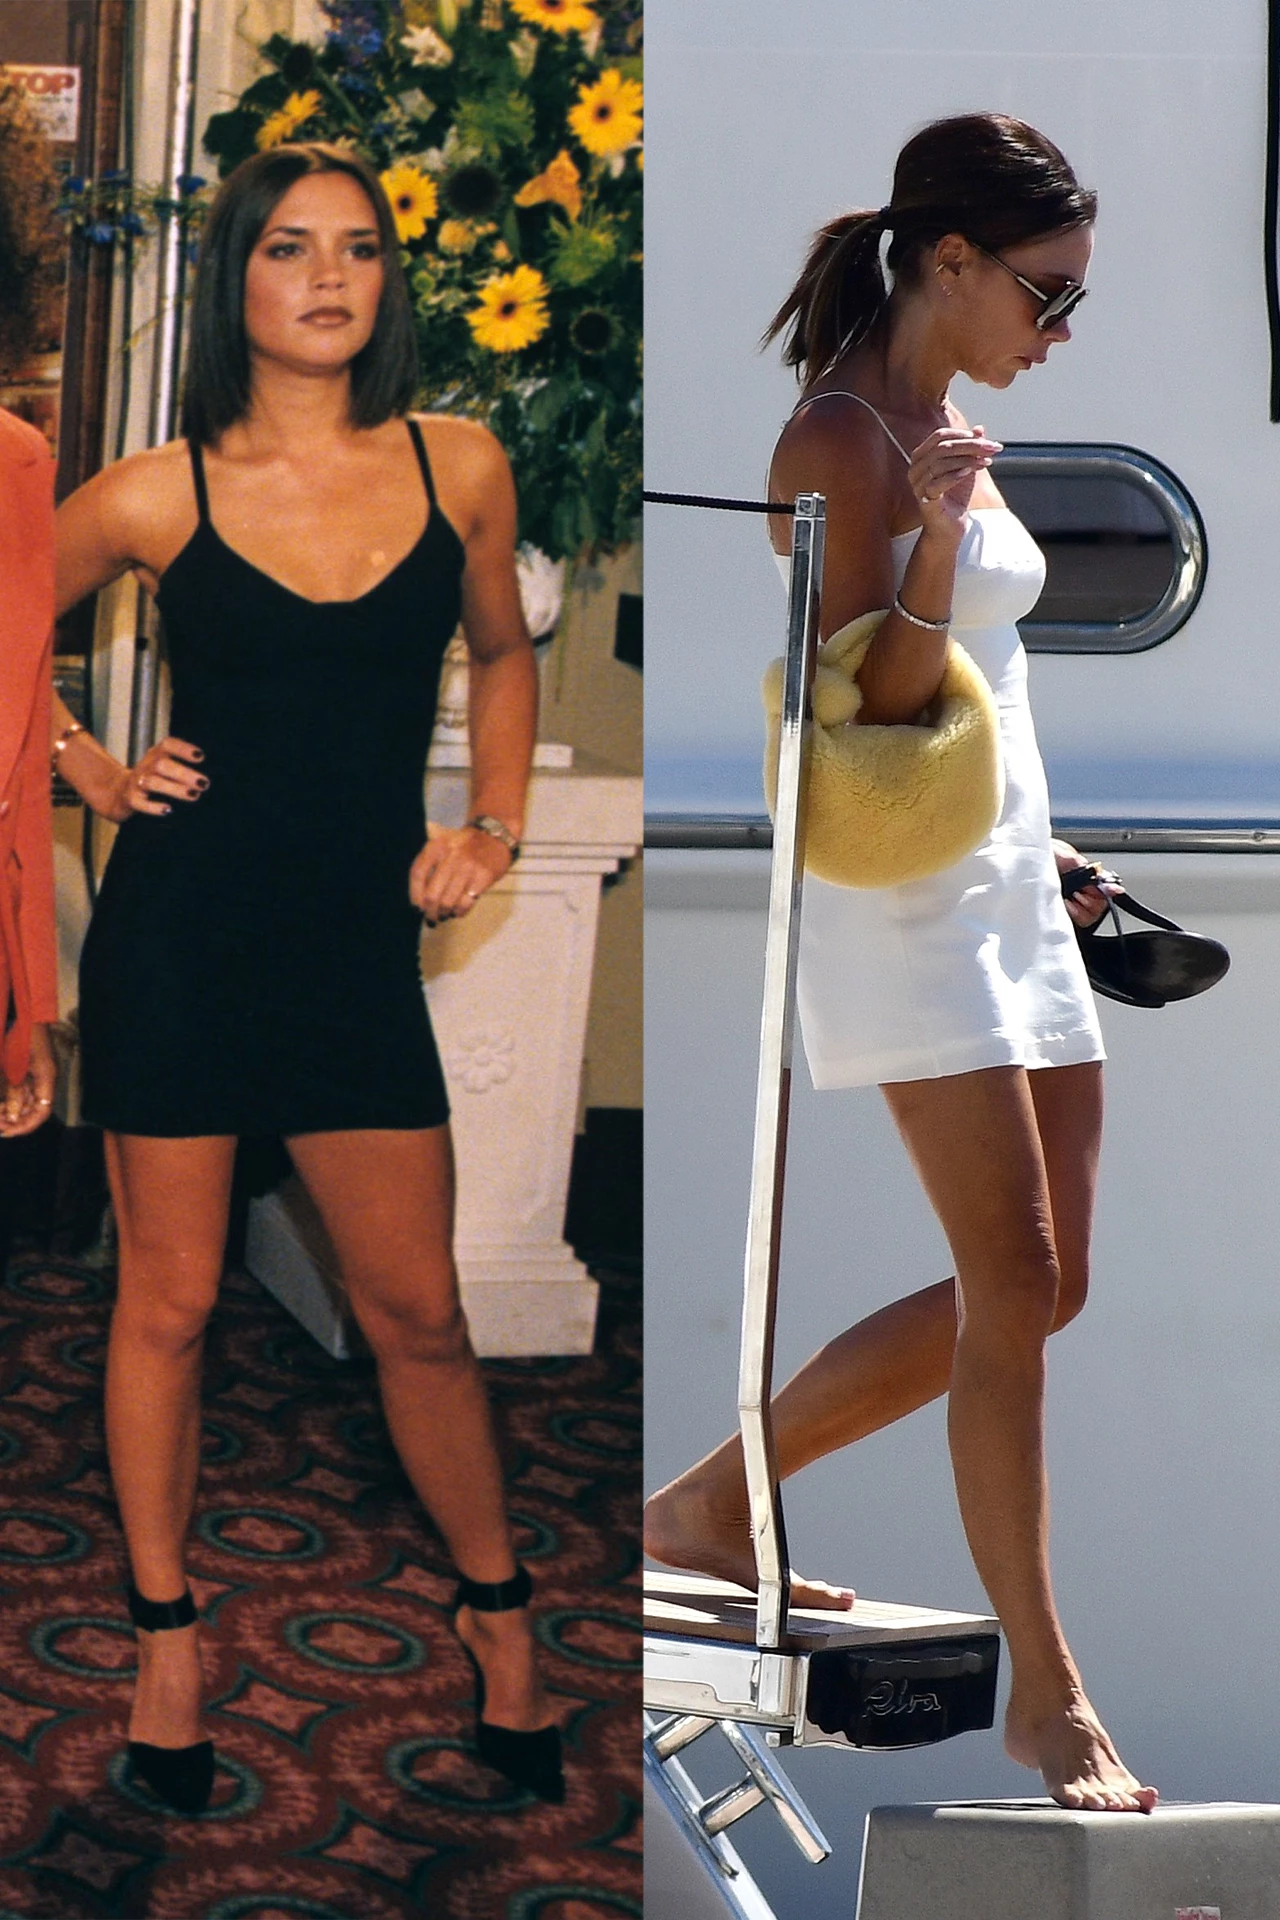 Вікторія в мінісукні у 1997 році за часів Spice Girls; Вікторія в білій мінісукні в Маямі у 2022 році.